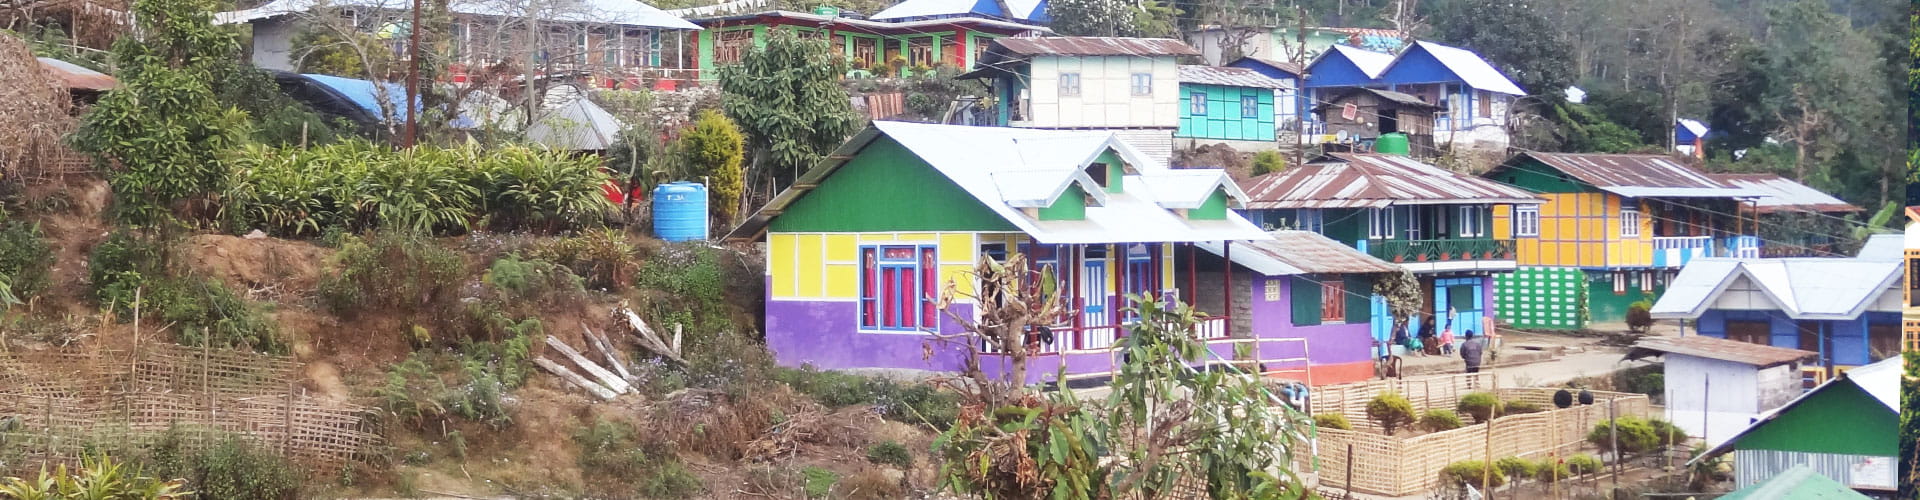 Darjeeling kalimpong tour plan from Siliguri